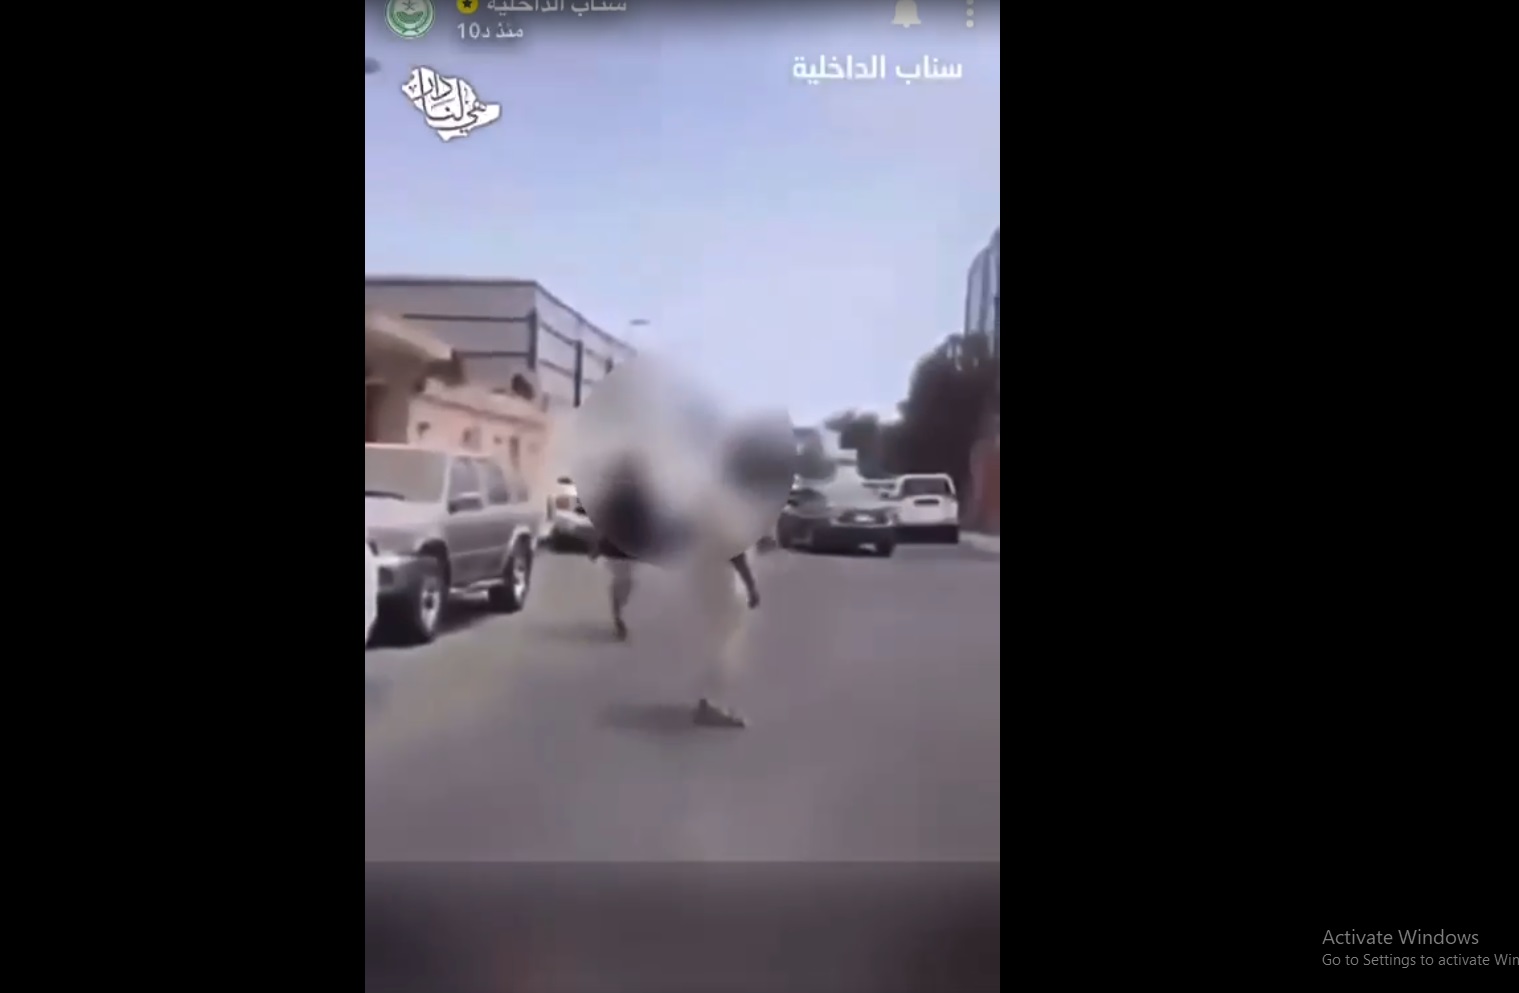 ضبط مواطن أطلق النار على آخر في جدة بسبب خلاف